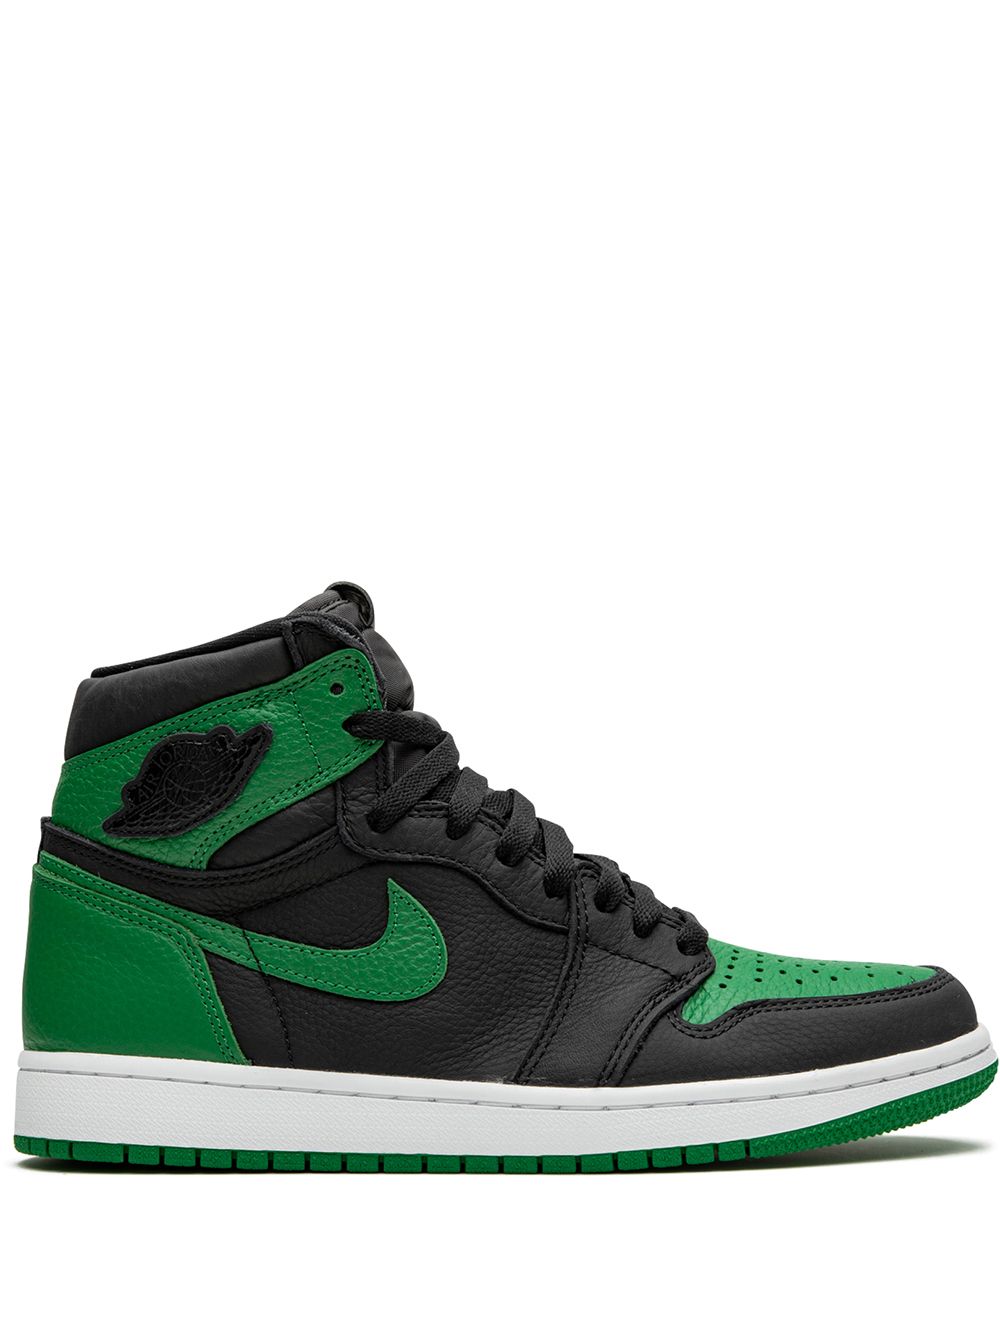 Jordan Air Jordan 1 Retro High "Pine Green 2.0" sneakers - Black